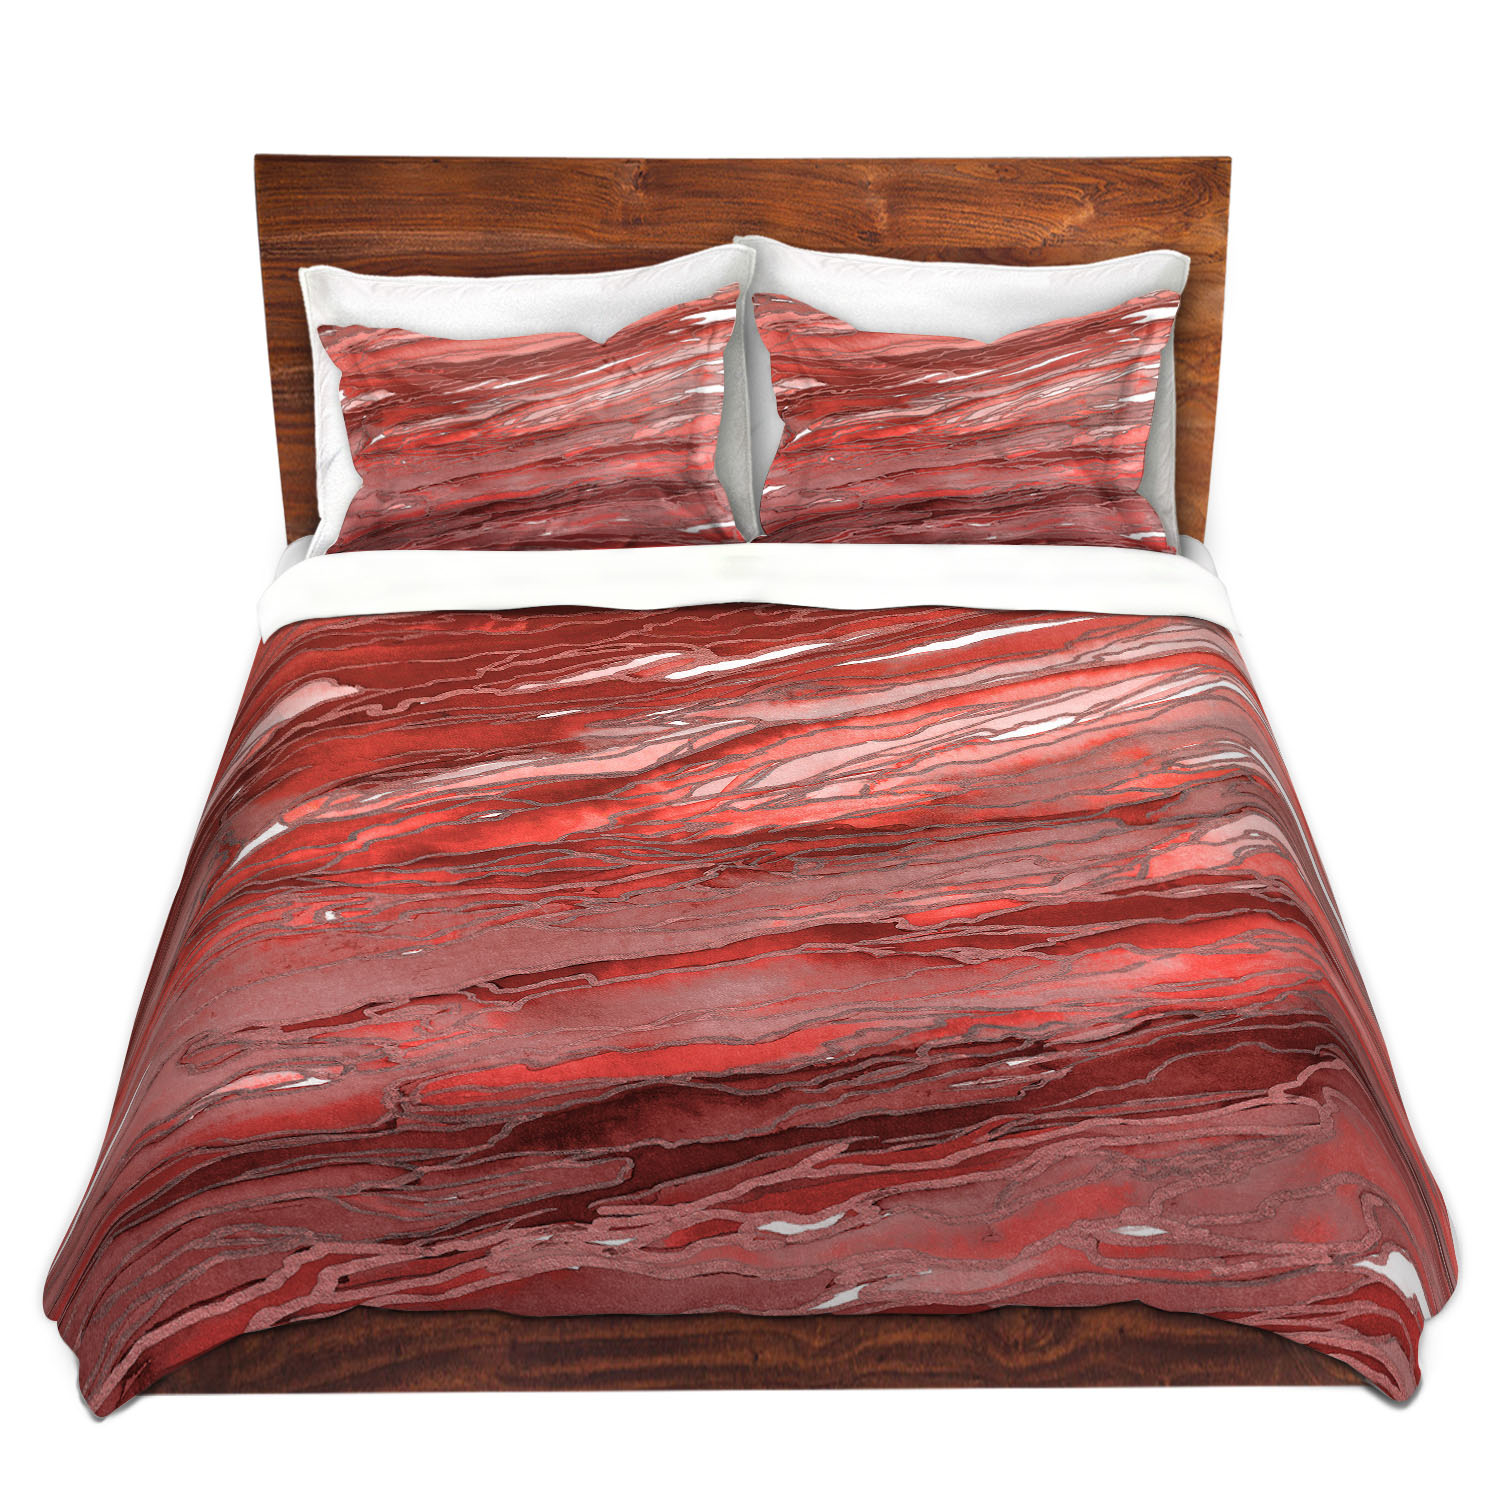 Dianoche Microfiber Duvet Covers By Julia Di Sano - Agate Magic Rust Red